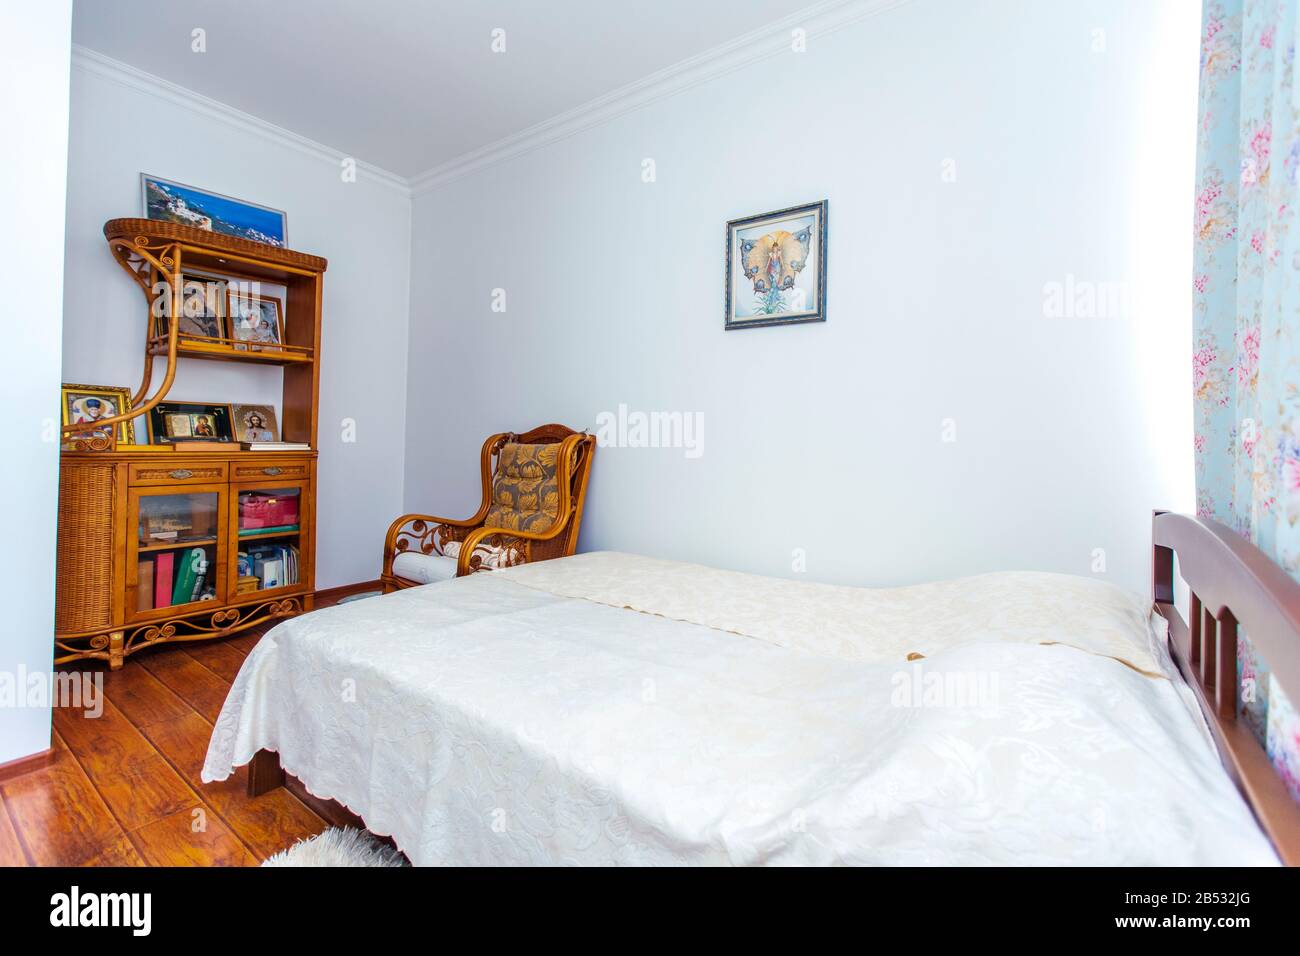 Schlafzimmer mit einem großen Doppelbett aus Holz, einem Schaukelstuhl und vielen christlichen Ikonen auf der Seitenwand gegenüber dem Bett. Stockfoto